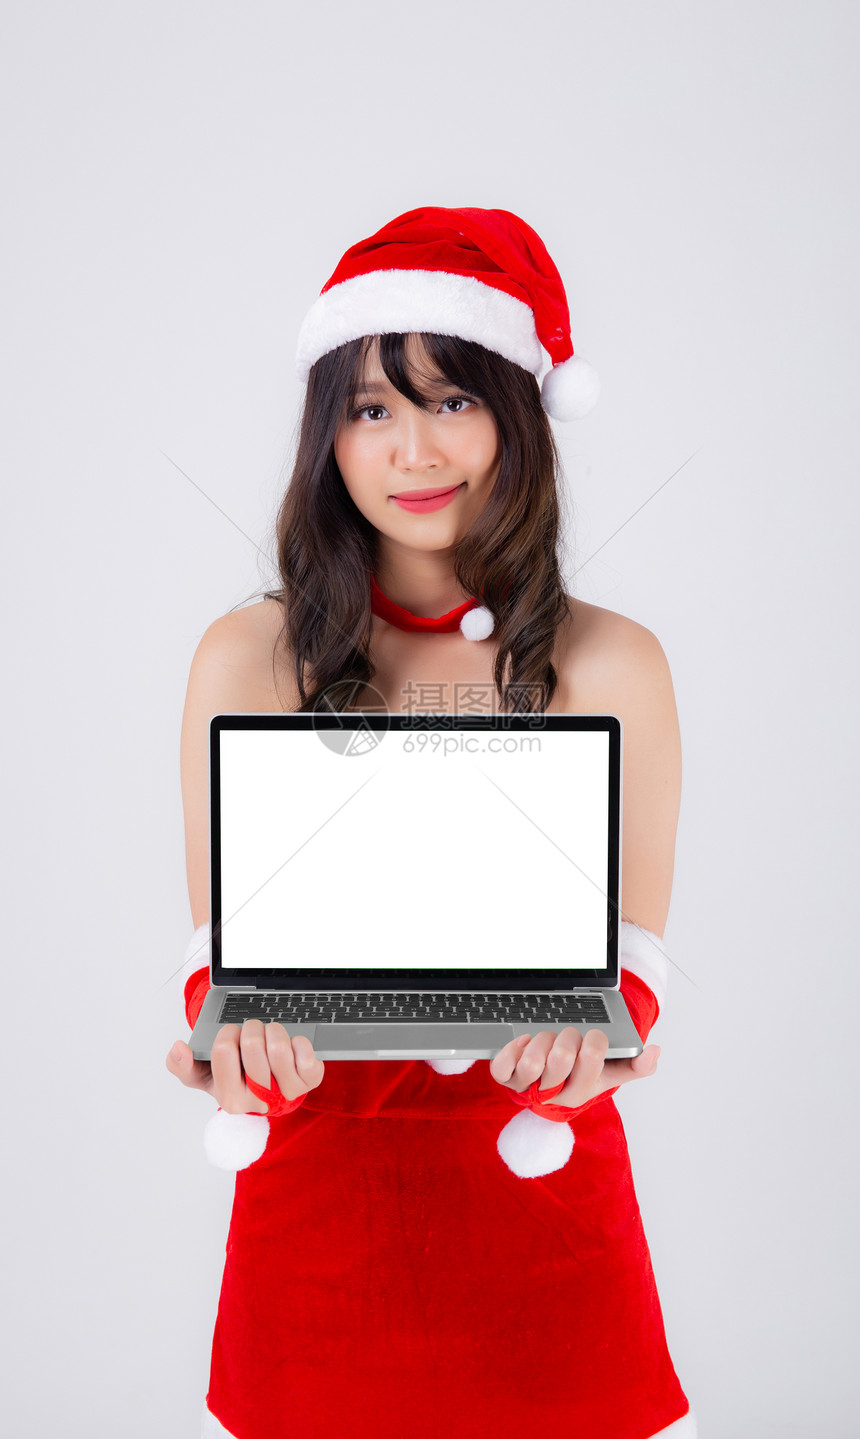 圣诞假时展示笔记本电脑却与白人背景隔绝美貌女孩拿着笔记本用于庆祝圣诞节或新年图片